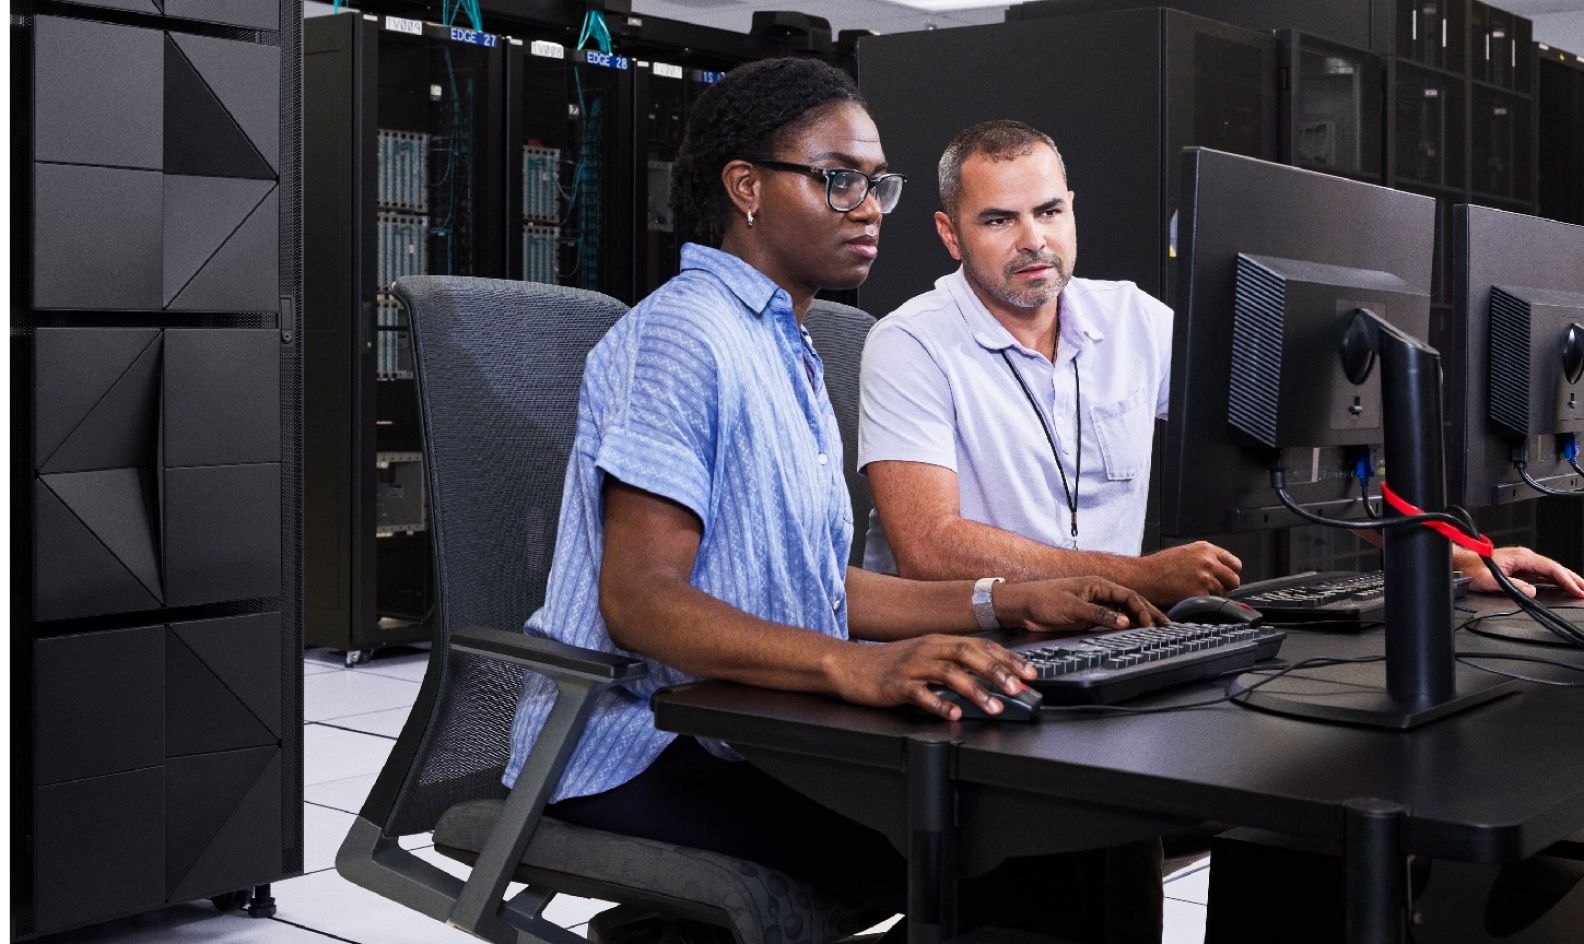 Deux employés assis à un bureau regardant un écran d’ordinateur